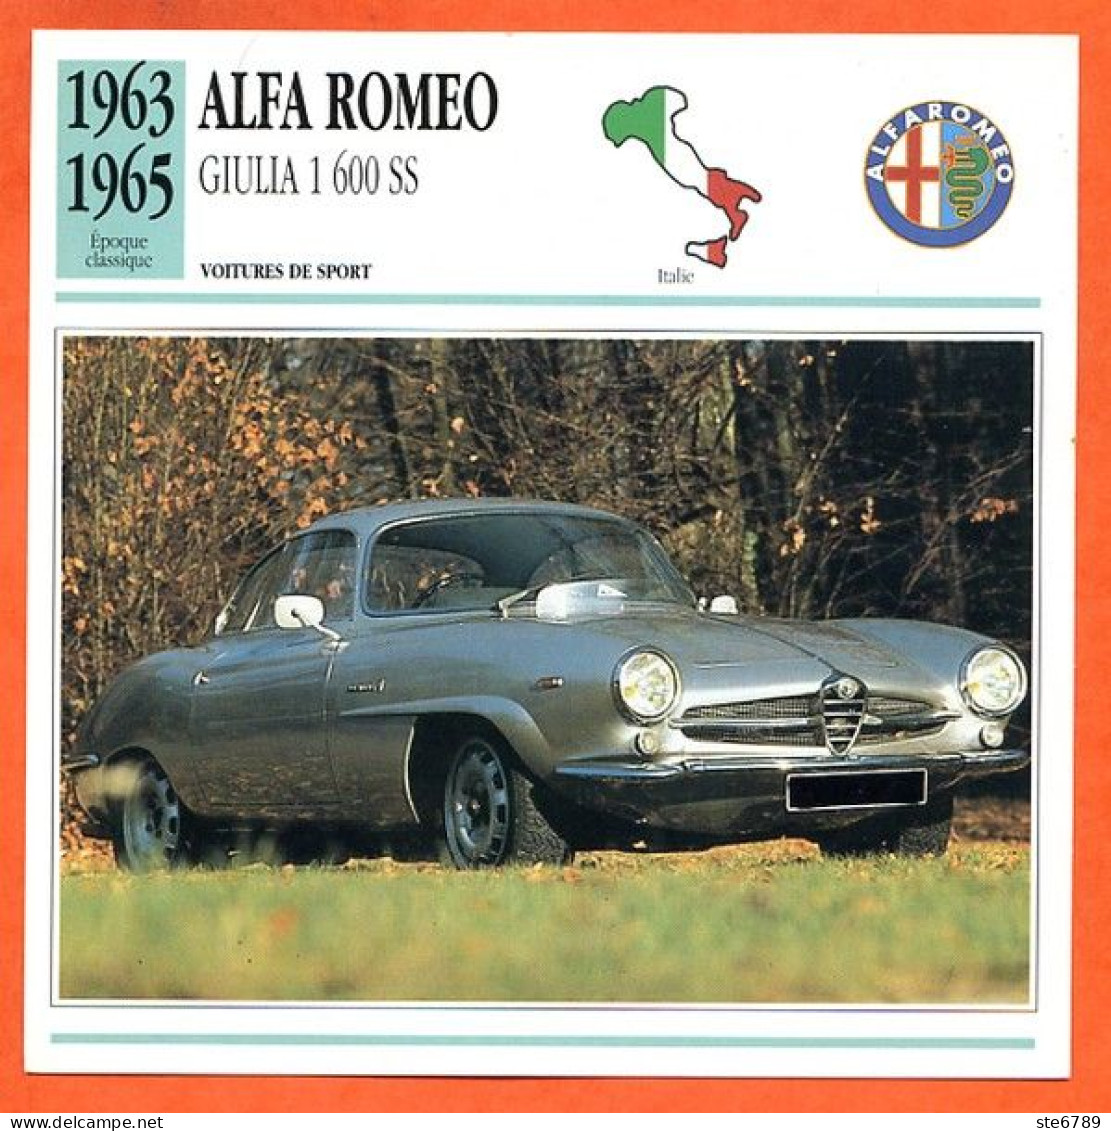 ALFA ROMEO GIULIA 1600 S 1963 Voiture De Sport Italie Fiche Technique Automobile - Automobili